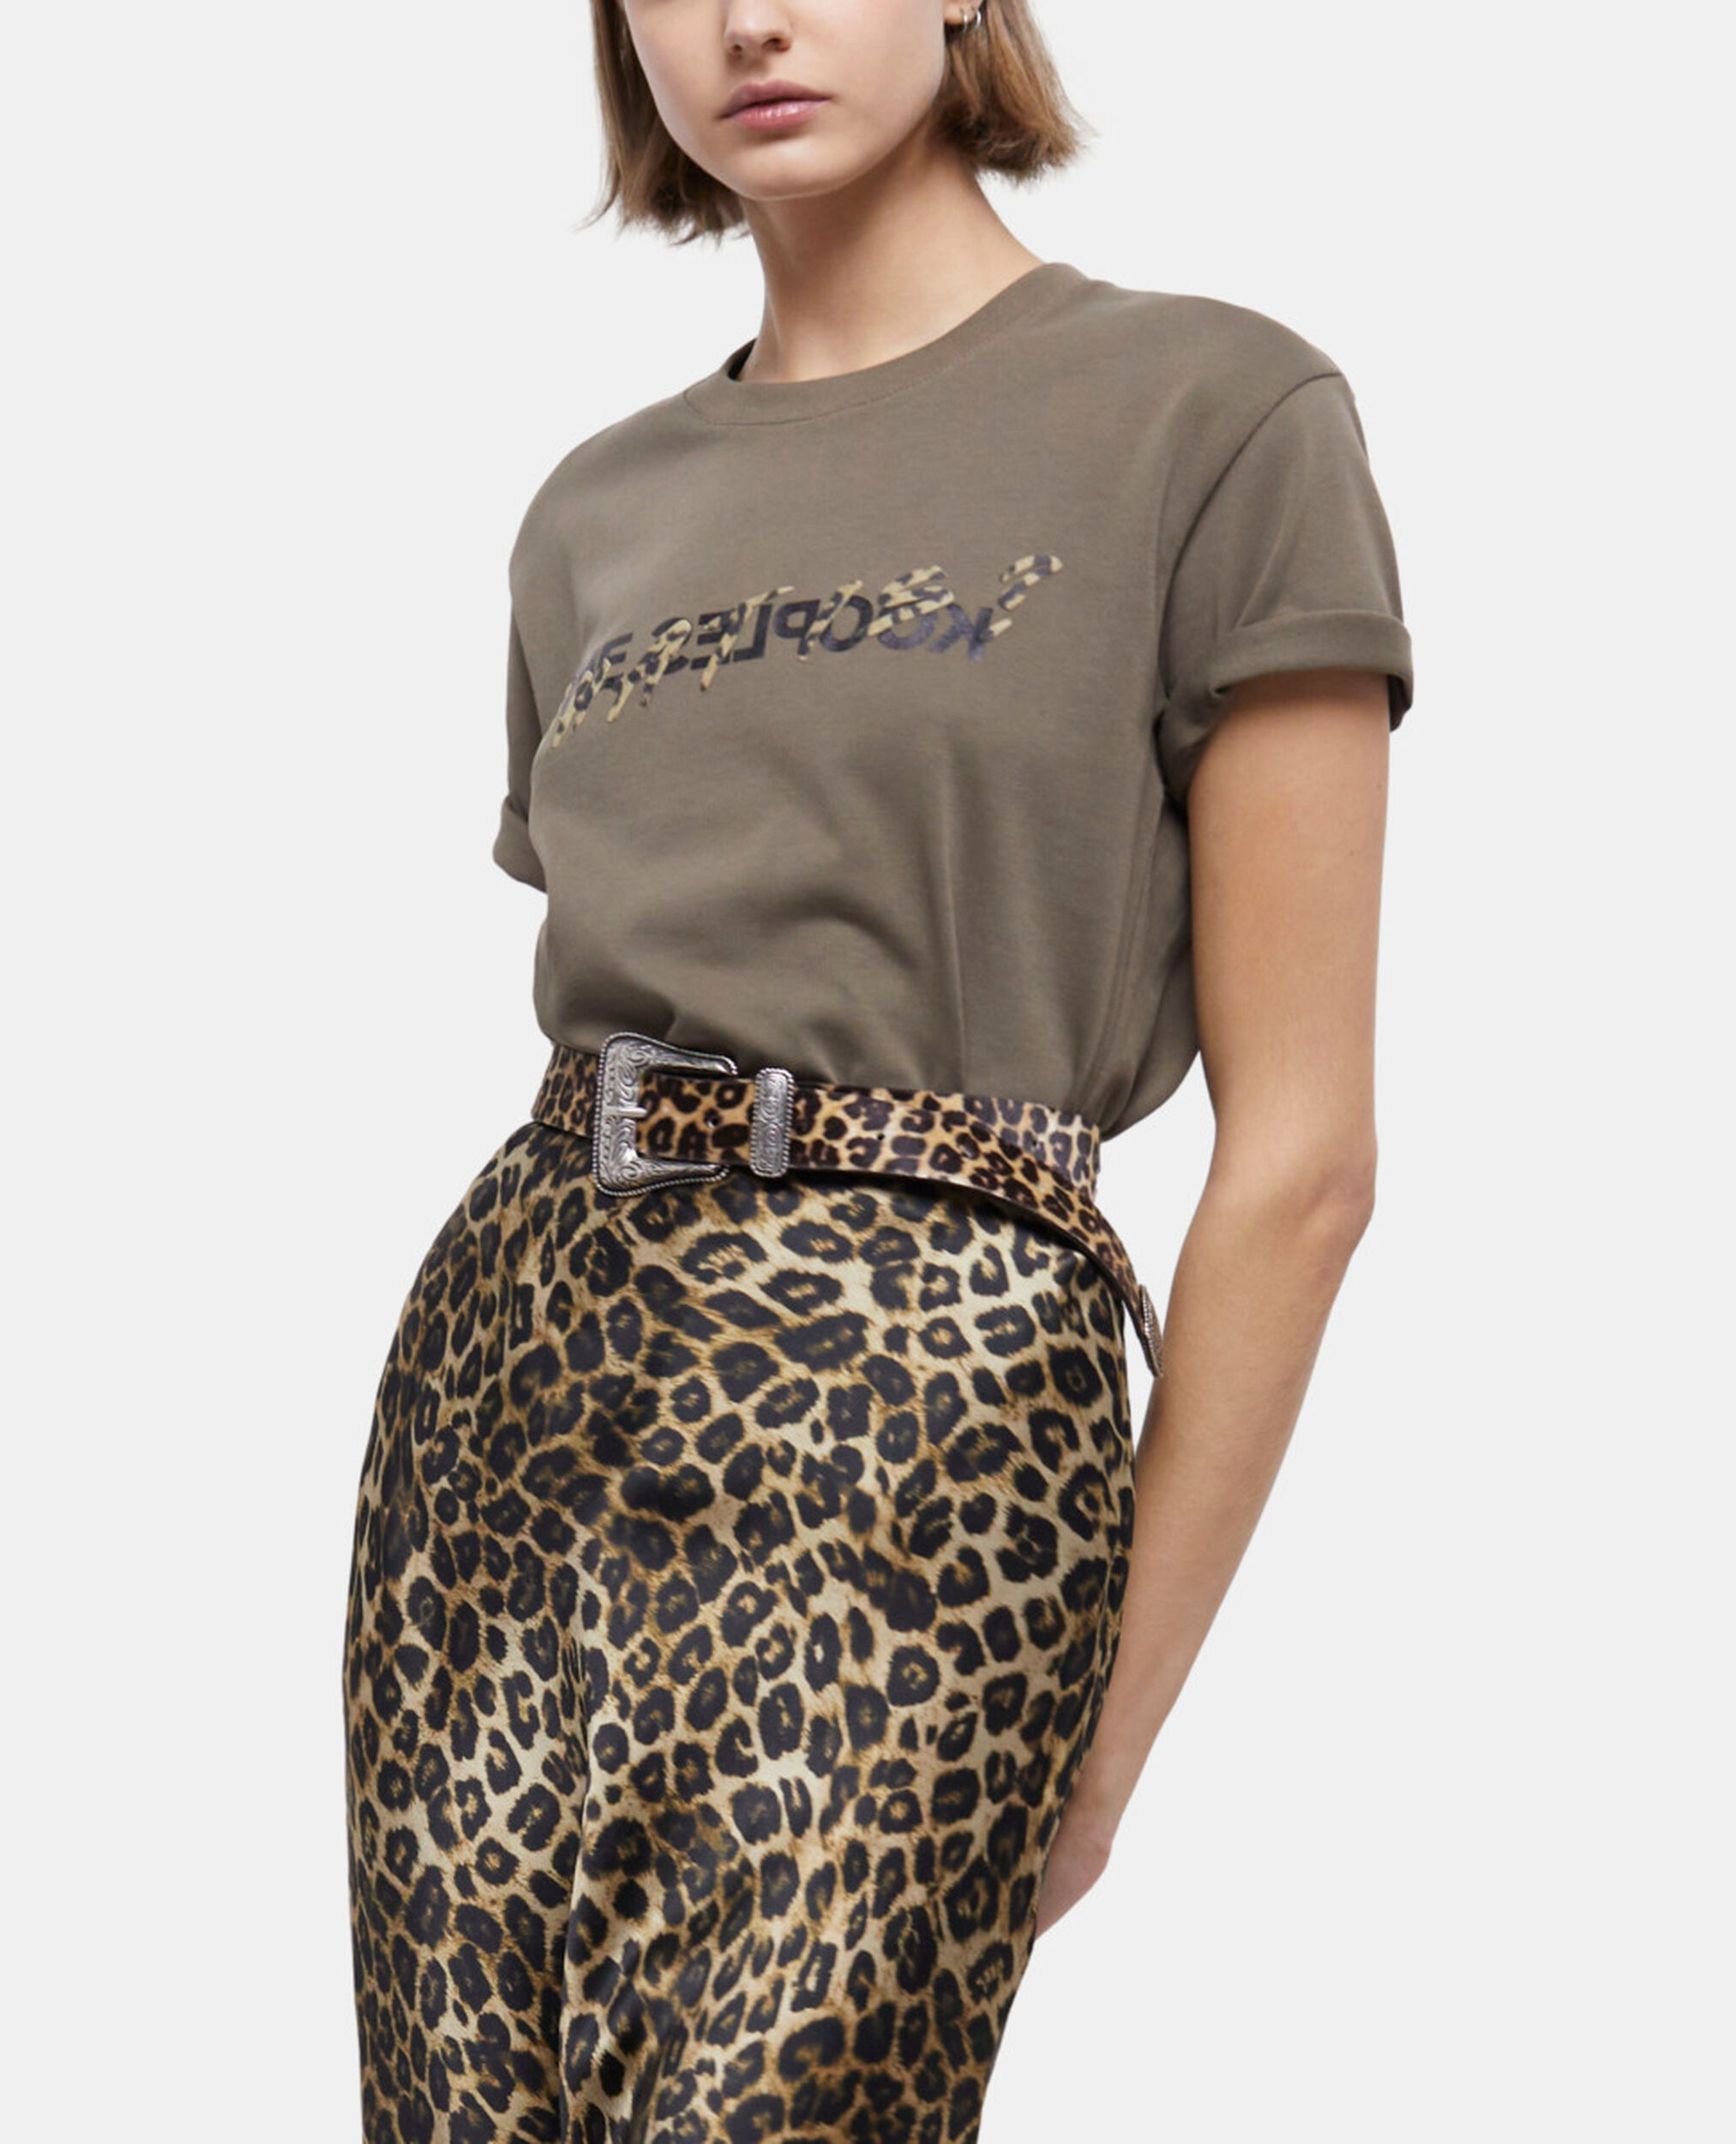 Camiseta What is caqui y leopardo para mujer, ALGUE, hi-res image number null